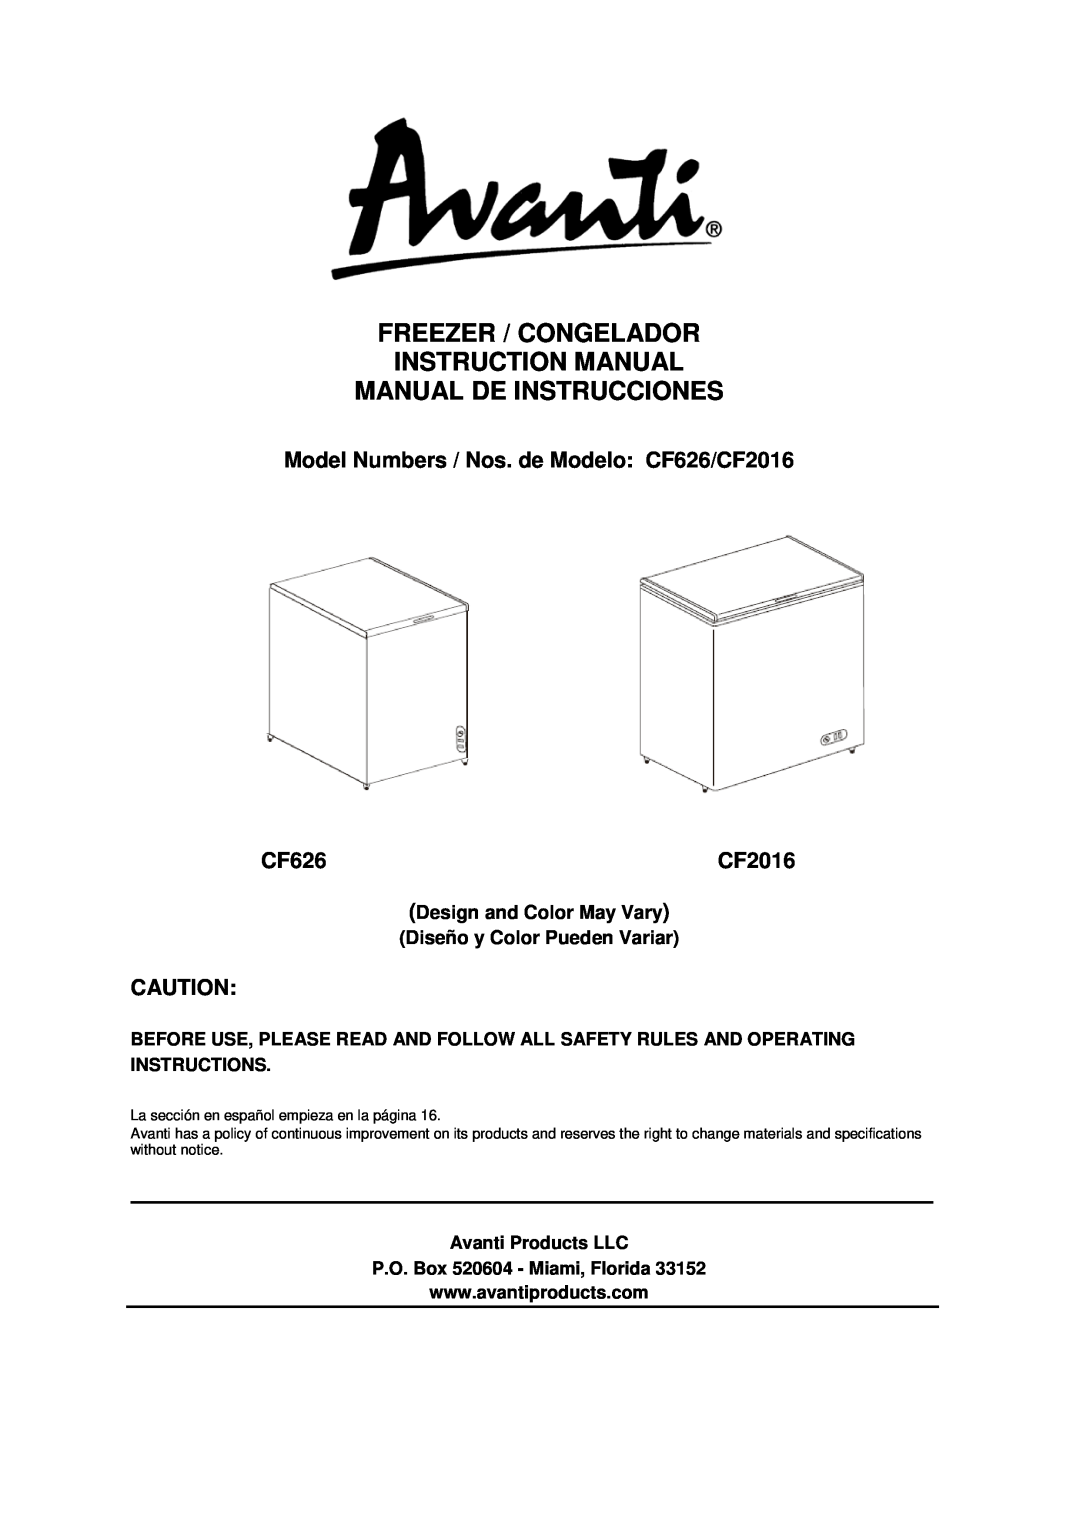 Avanti CF10016PE instruction manual Manual De Instrucciones, Model Numbers / Nos. de Modelo, CF6216E, Avanti Products LLC 